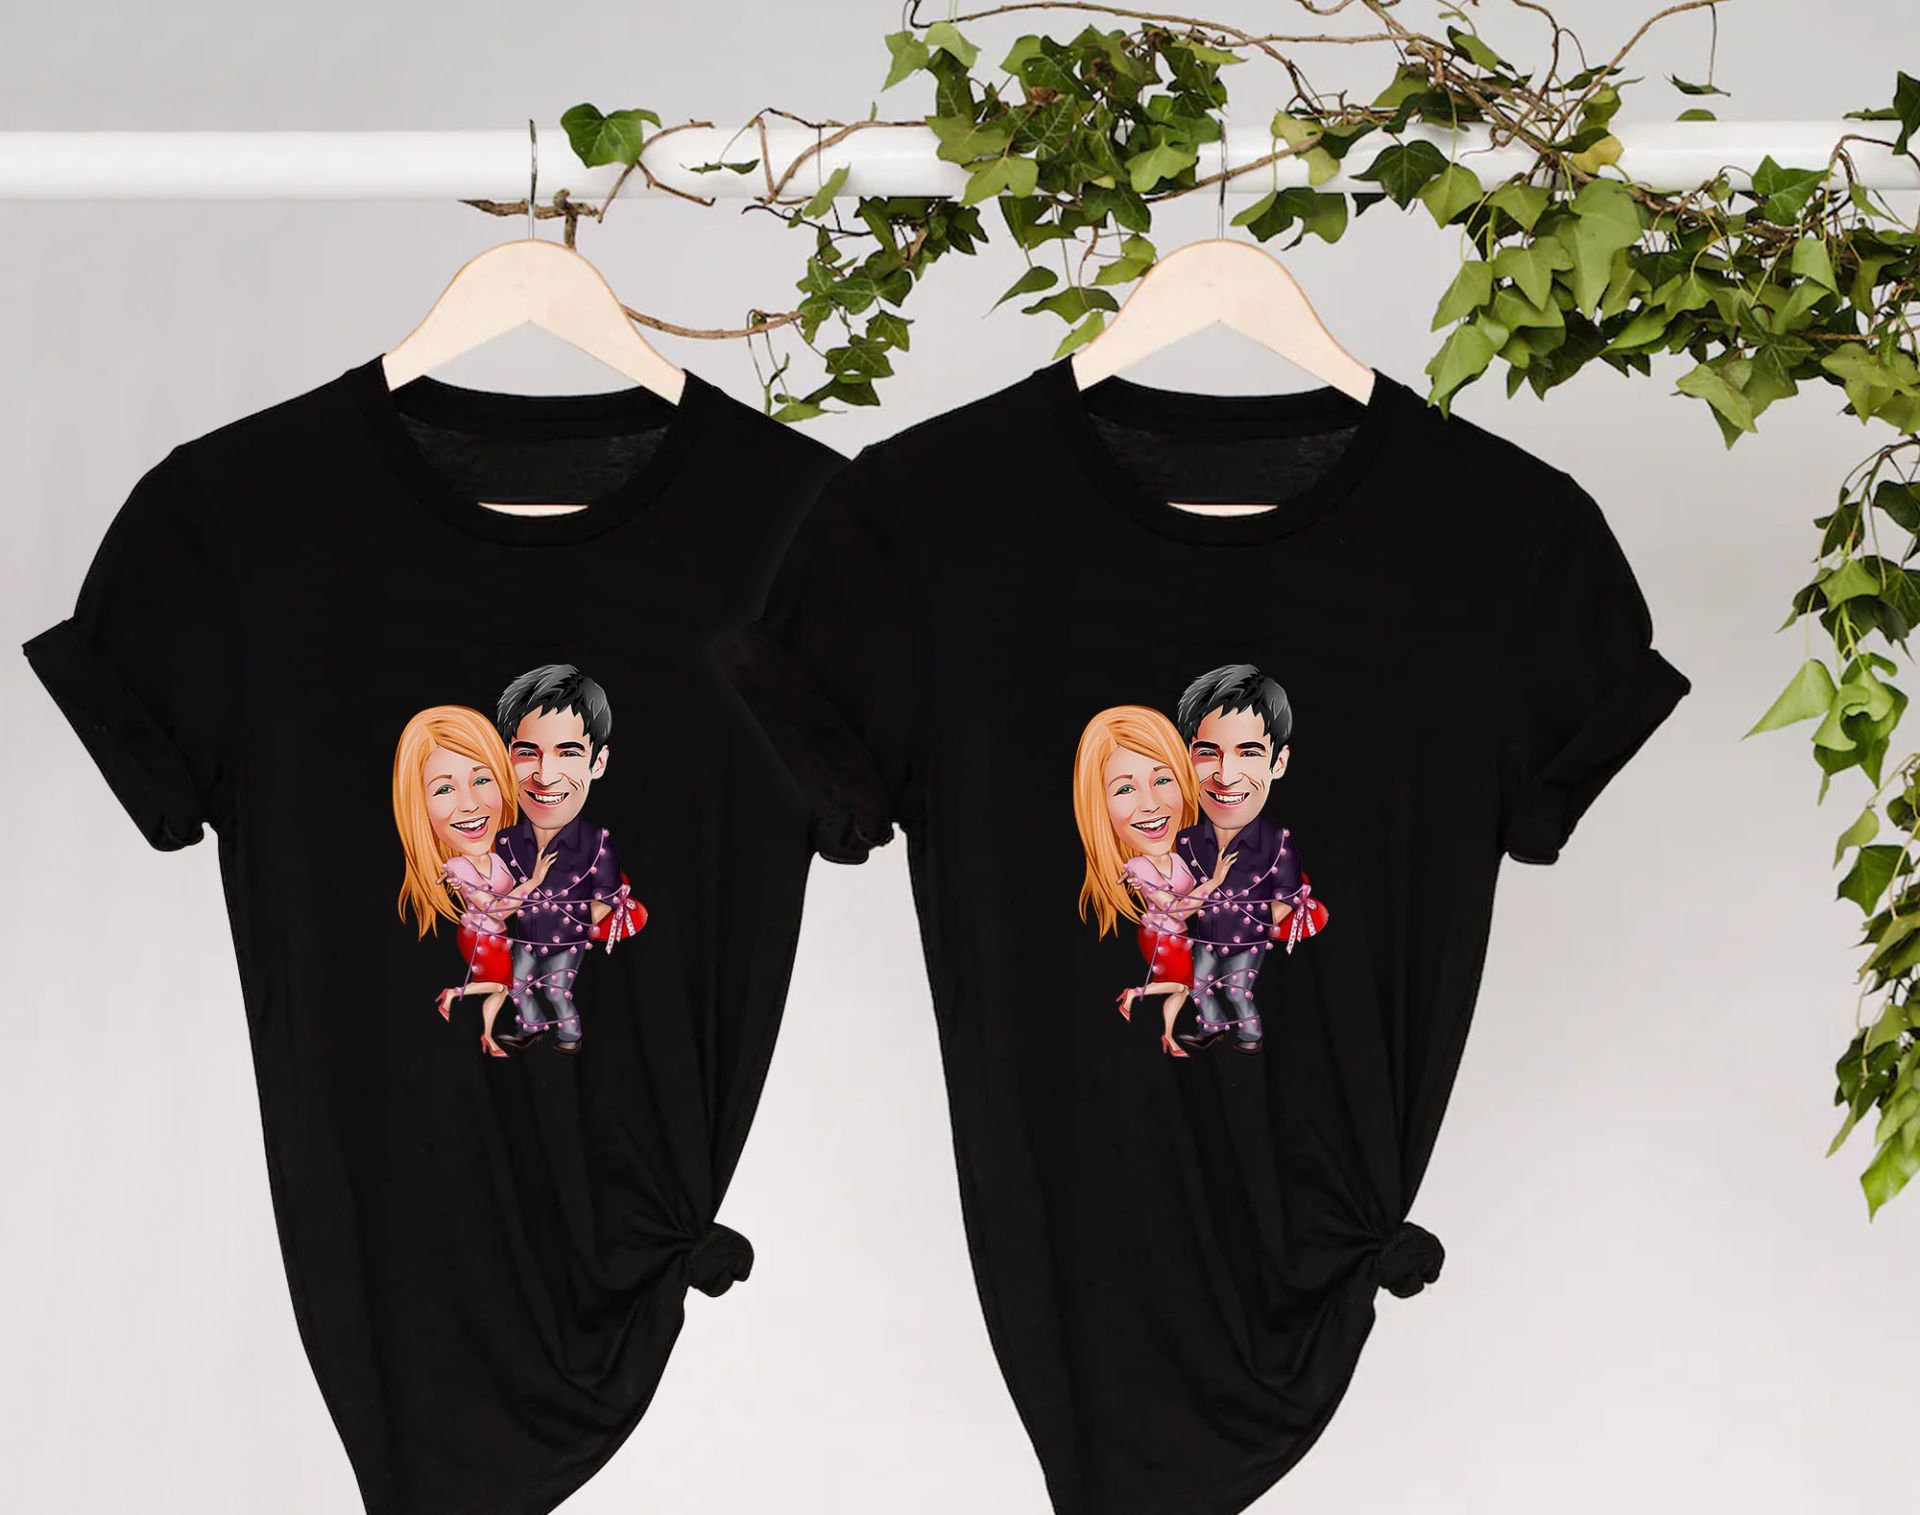 BK Gift Kişiye Özel Sevgililer Karikatürlü İkili Siyah T-shirt Seti, Sevgililer Hediye, Çift Hediyesi, Yıl Dönümü Hediyesi, Kişiye Özel Tişört-7